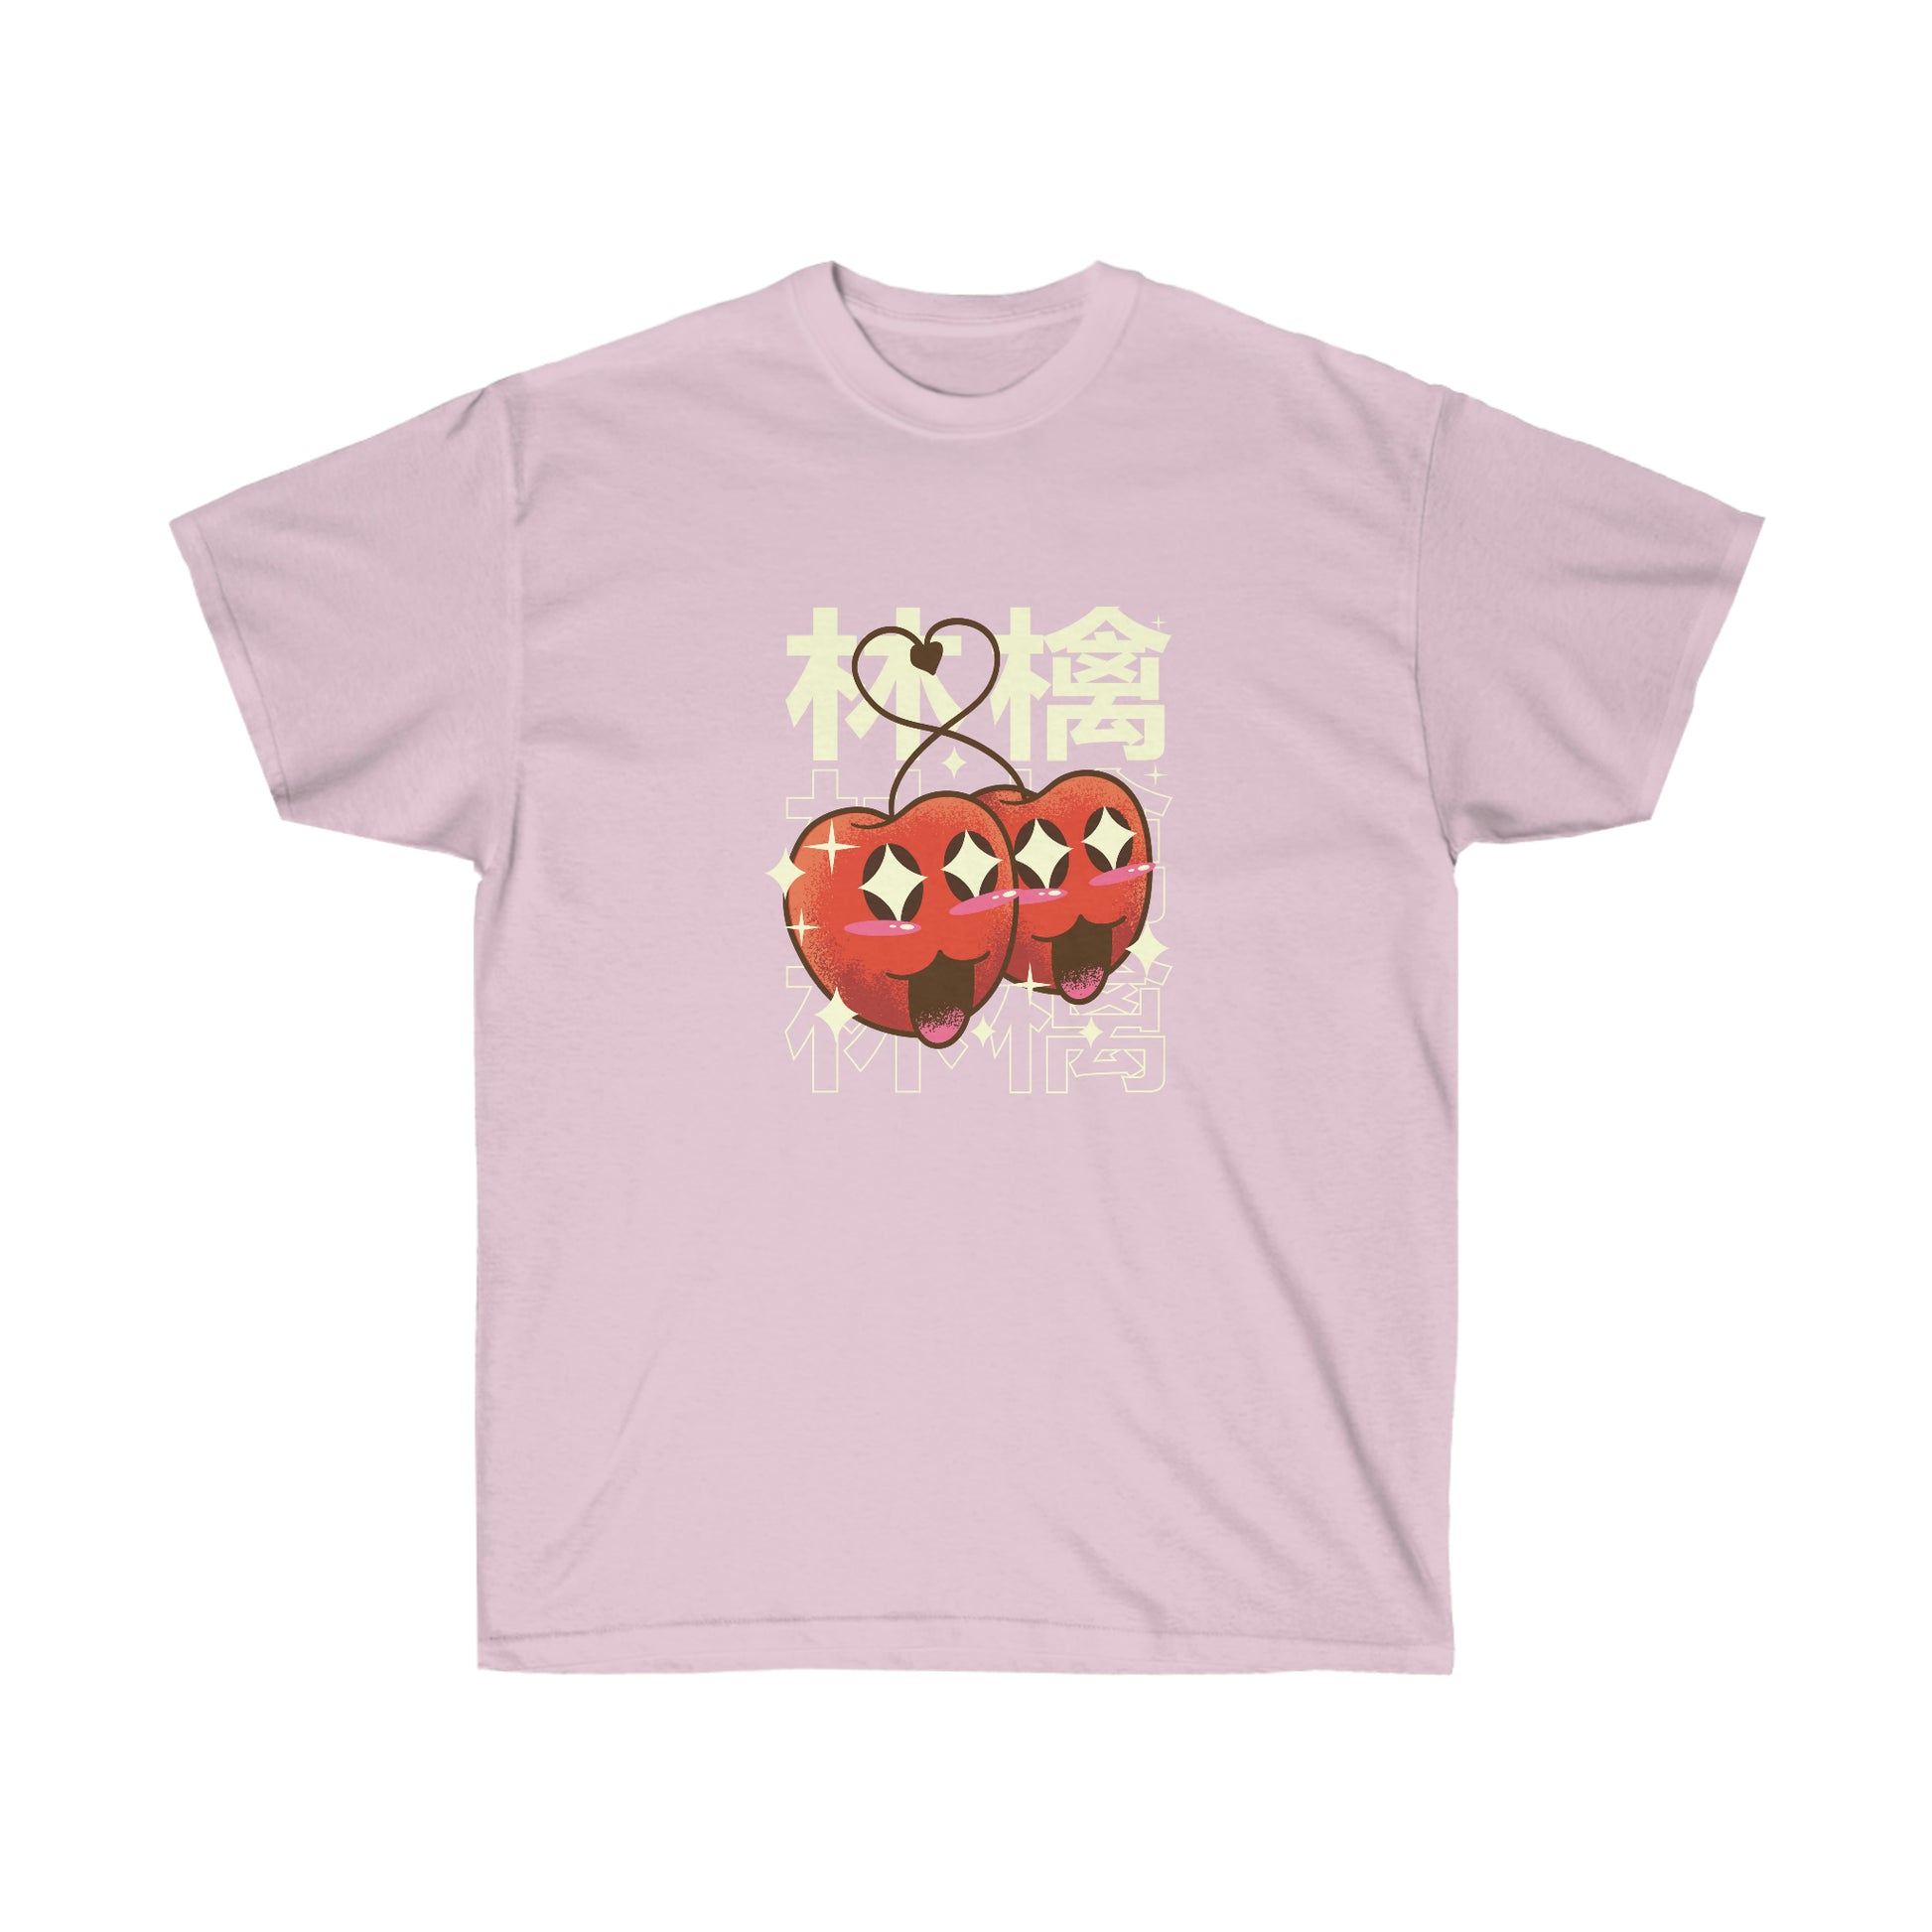 Kawaii Sweatshirt, Kawaii Clothing, Kawaii Clothes, Yami Kawaii Aesthetic, Pastel Kawaii Cherries Sweatshirt T-Shirt